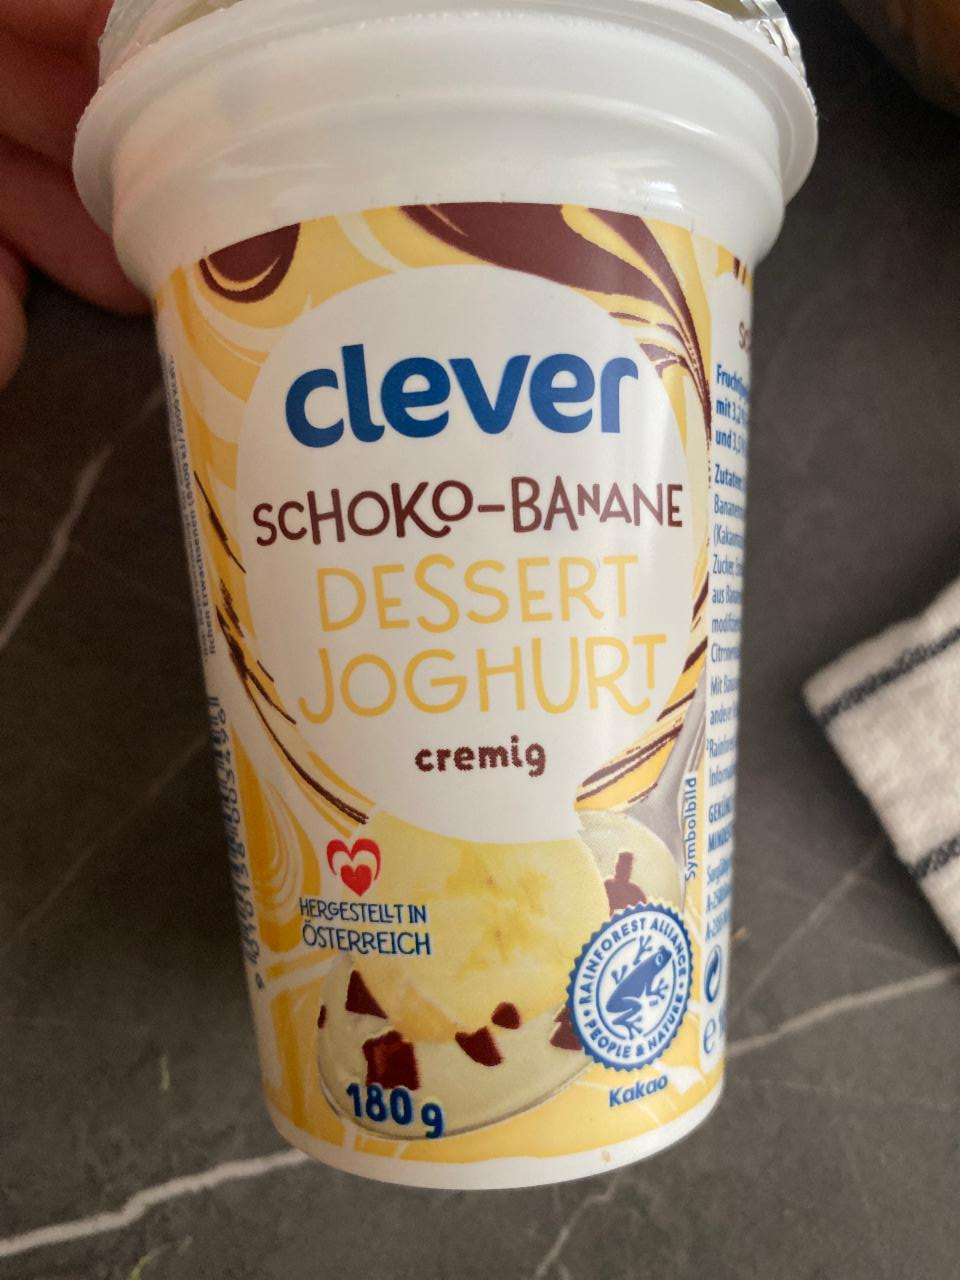 Fotografie - Schoko-Banane dessert joghurt cremig Clever